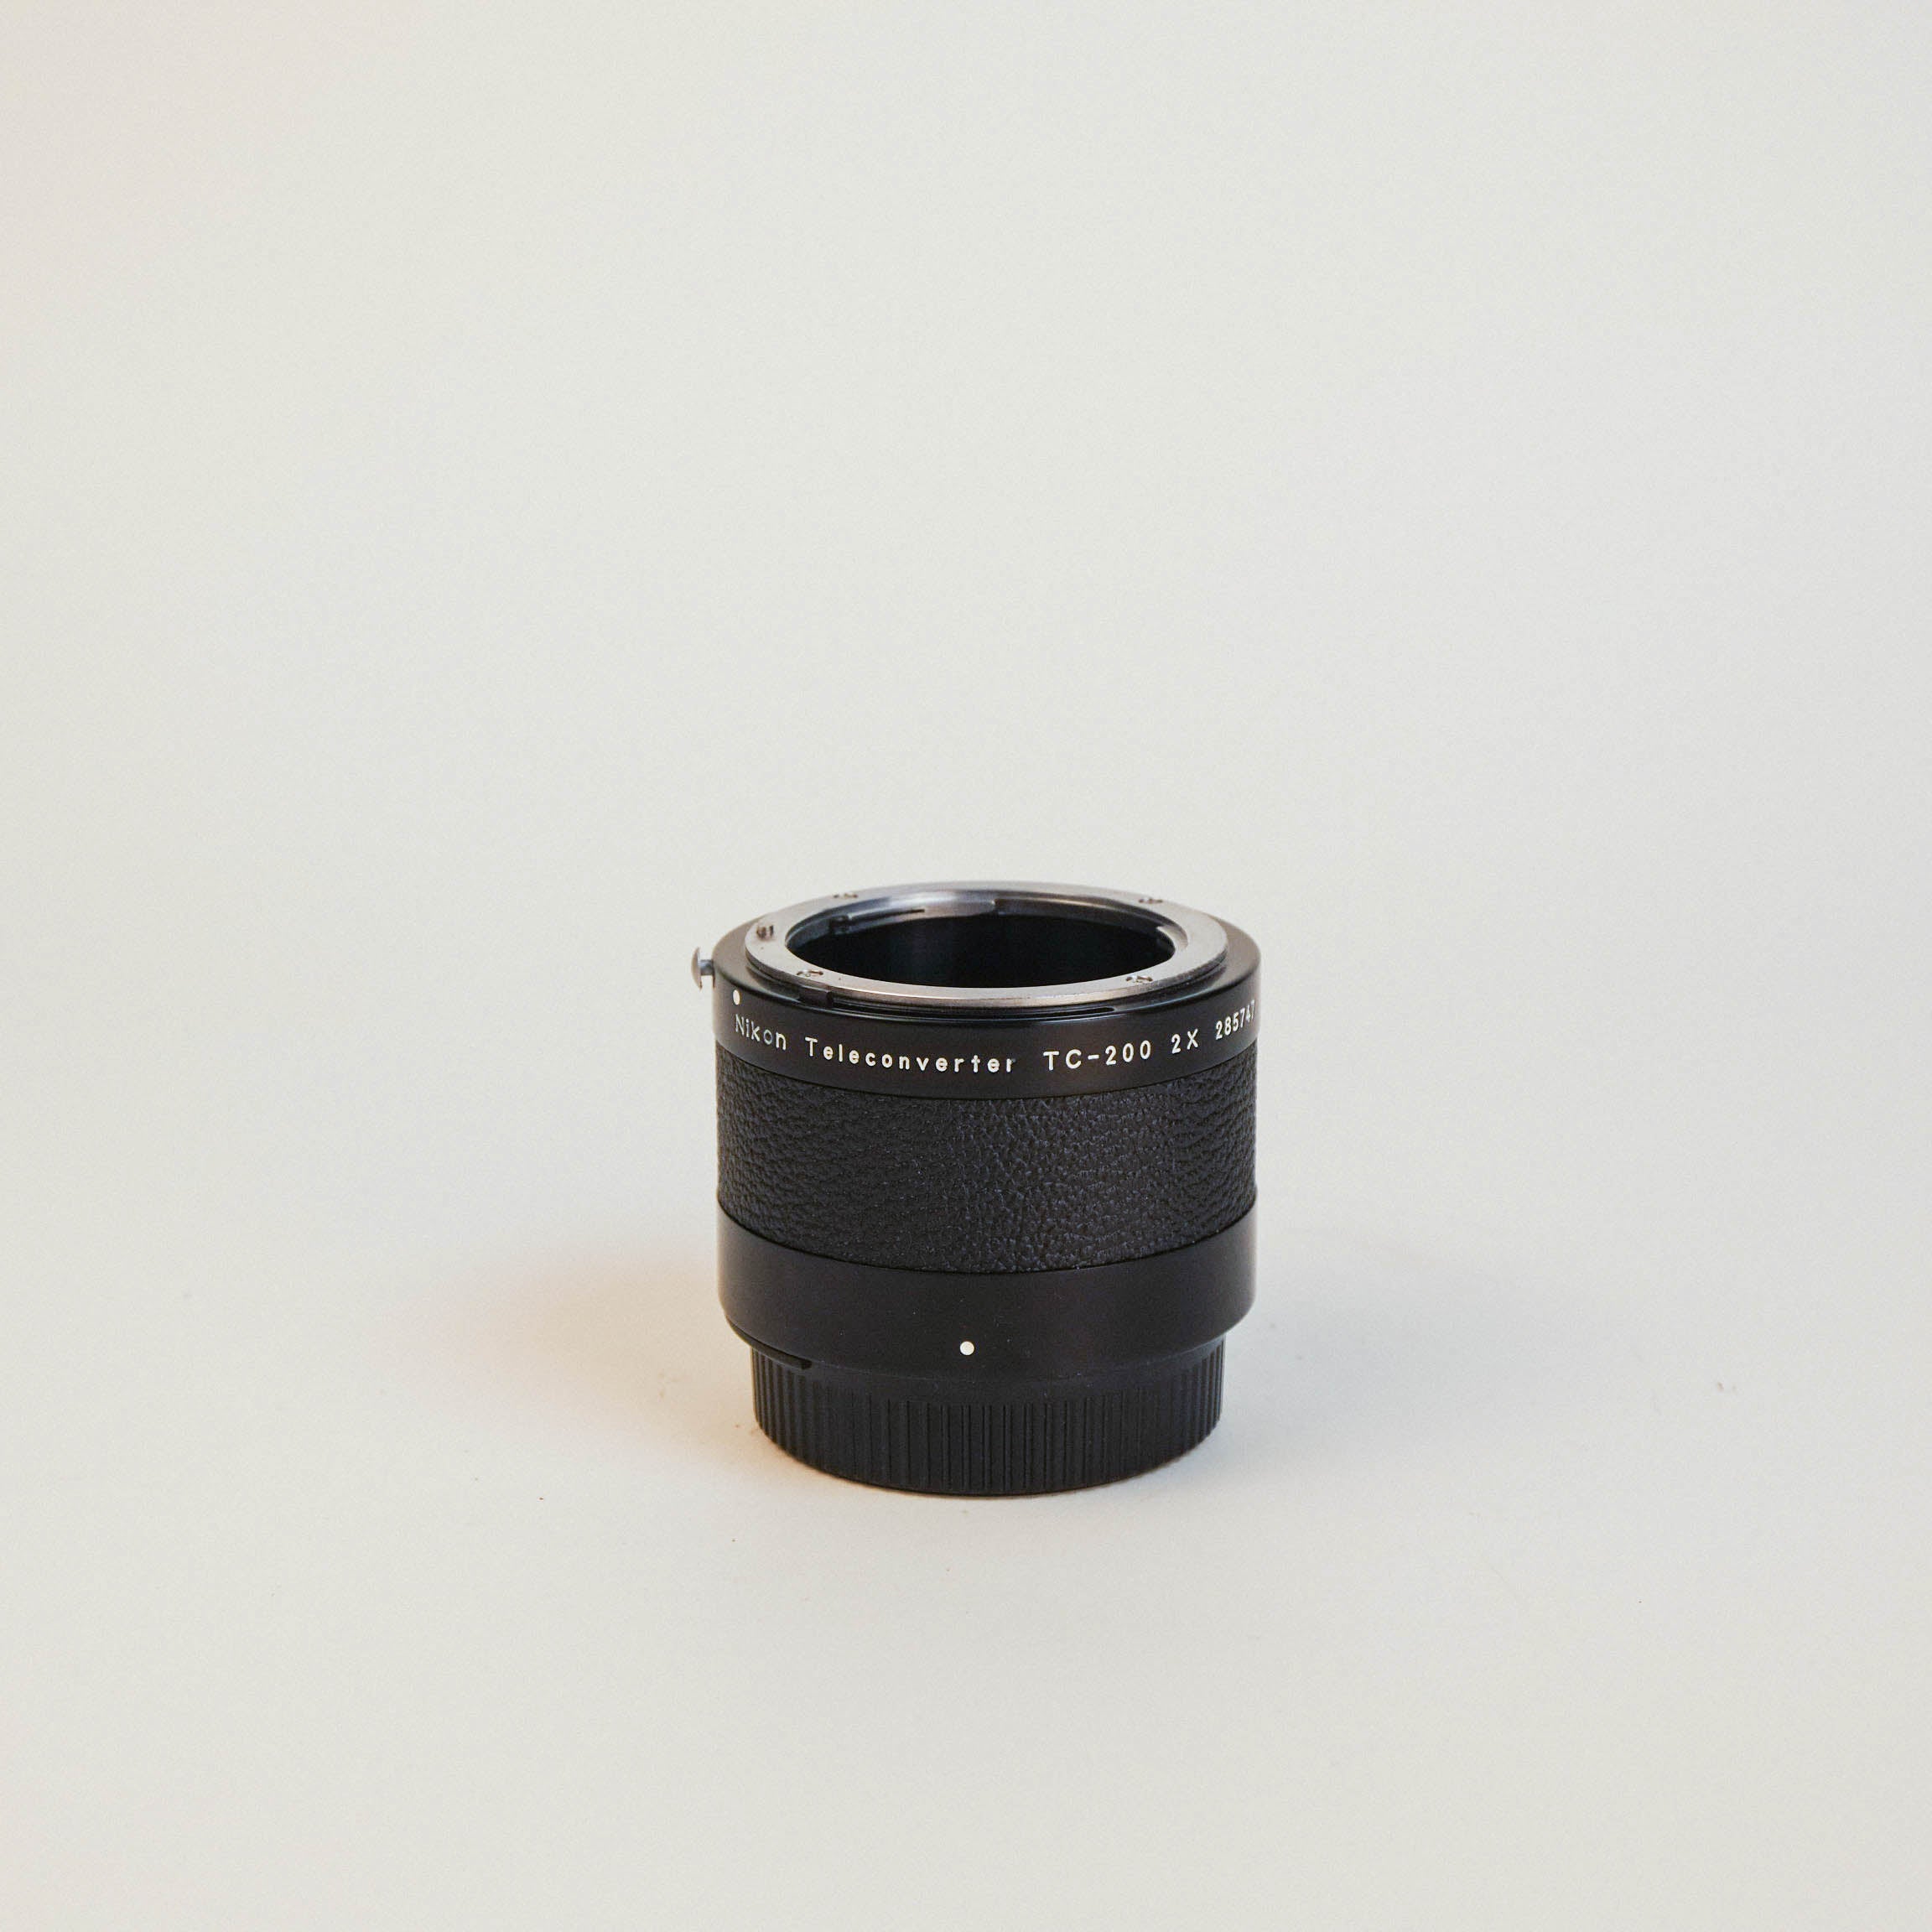 Nikon Teleconverter TC-200 2 X - レンズ(単焦点)